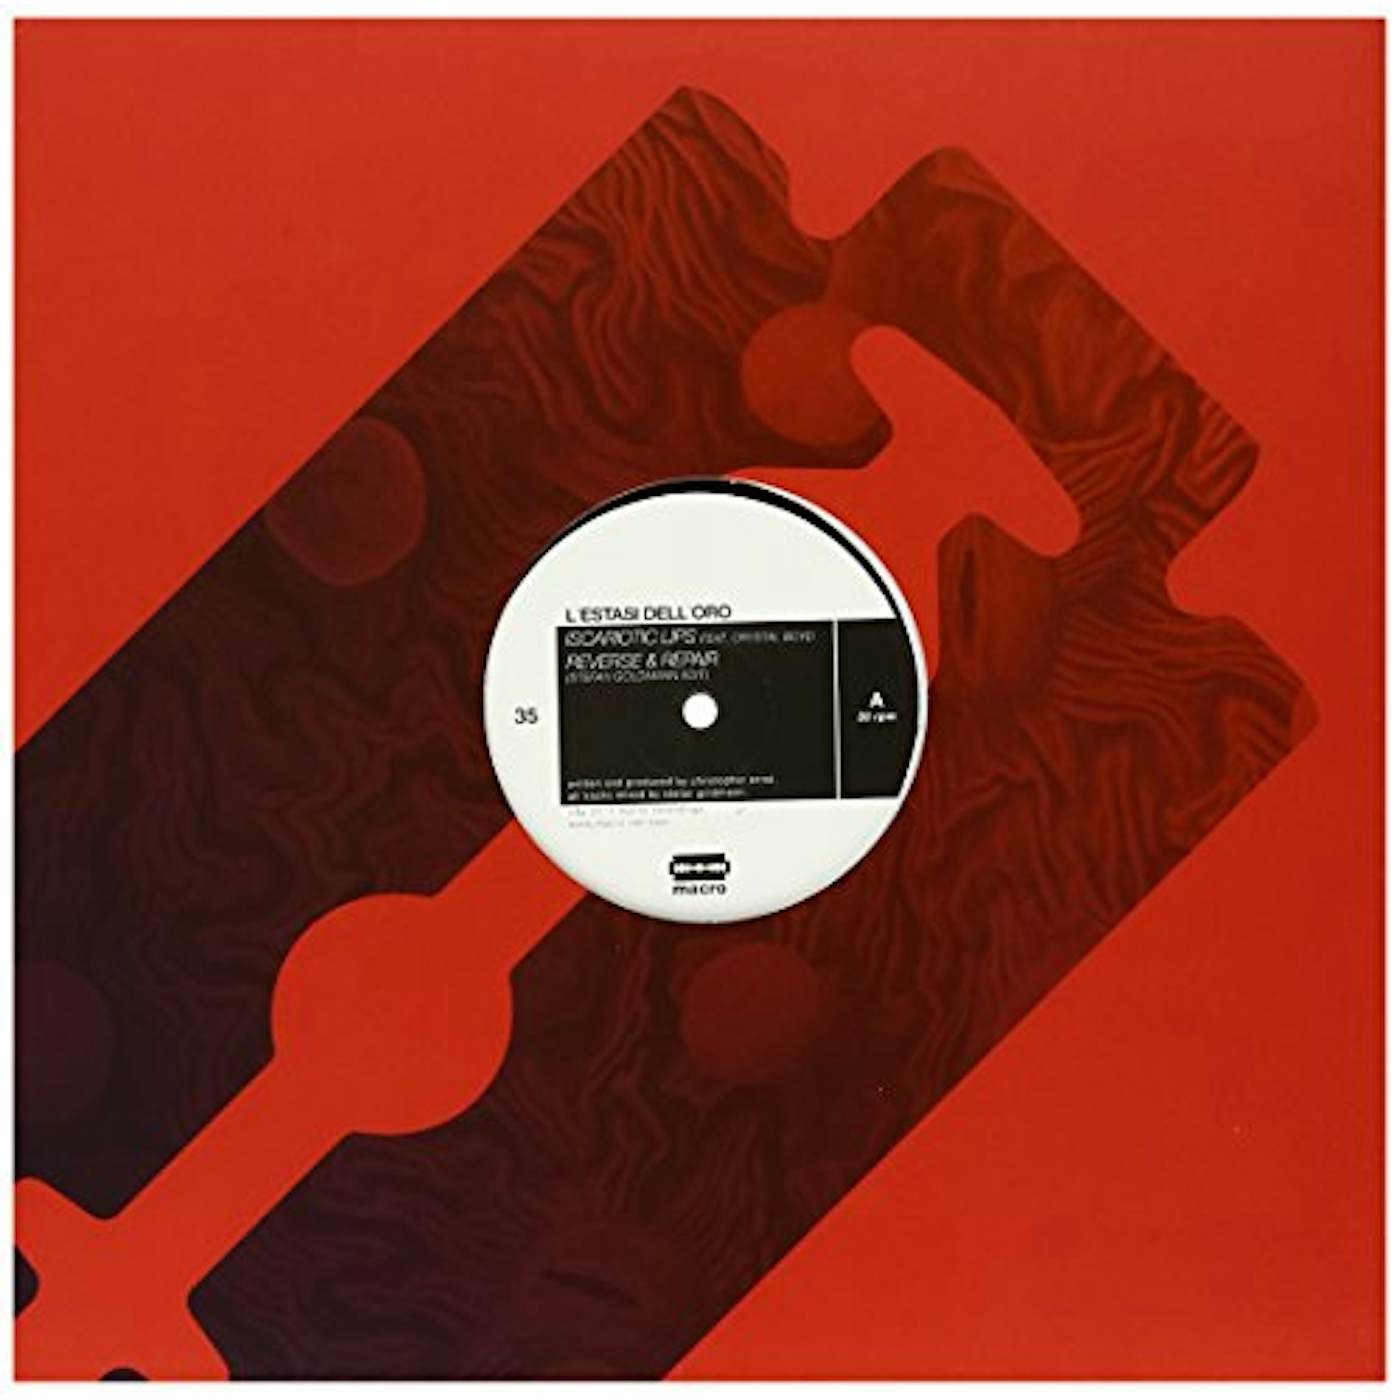 L'estasi Dell'oro ISCARIOTIC LIPS / REVERSE & REPAIR Vinyl Record